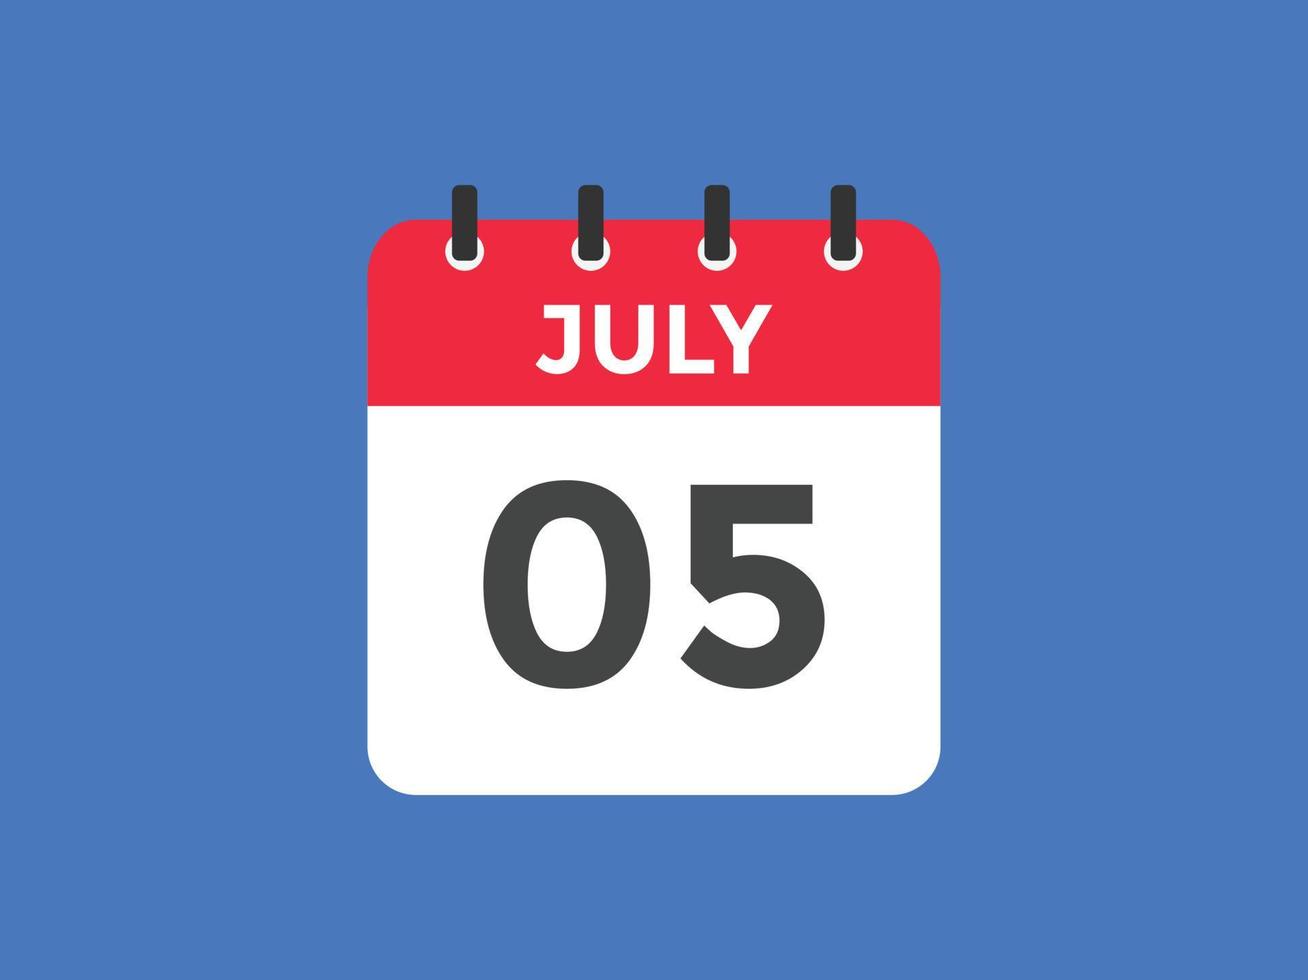 lembrete de calendário de 5 de julho. 5 de julho modelo de ícone de calendário diário. modelo de design de ícone de calendário 5 de julho. ilustração vetorial vetor